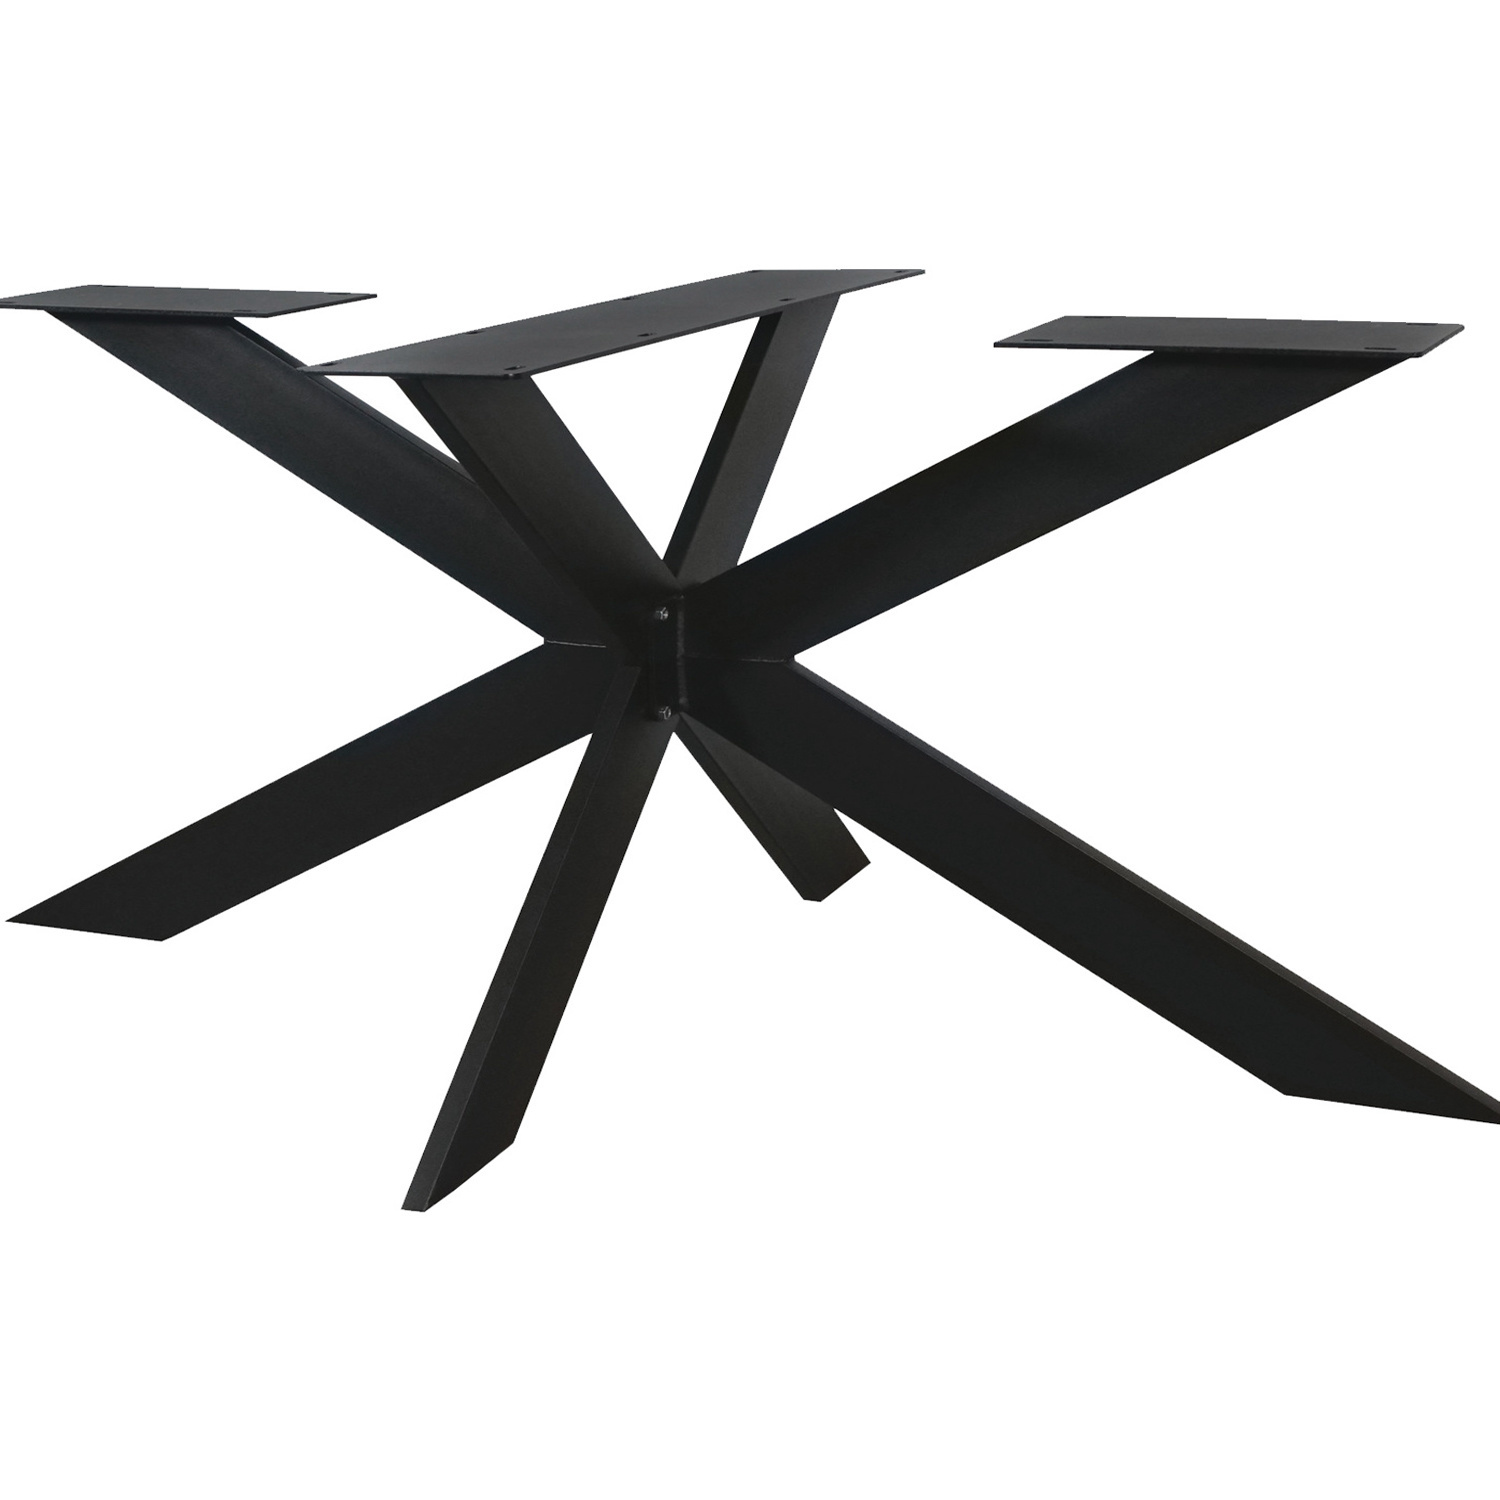  Tischgestell Metall Spider exclusiv- 3-Teilig - 3x15 cm - 90x180 cm - 72,5 cm hoch - Stahl Tischuntergestell / Mittelfuß Rechteck & oval - Beschichtet - Schwarz